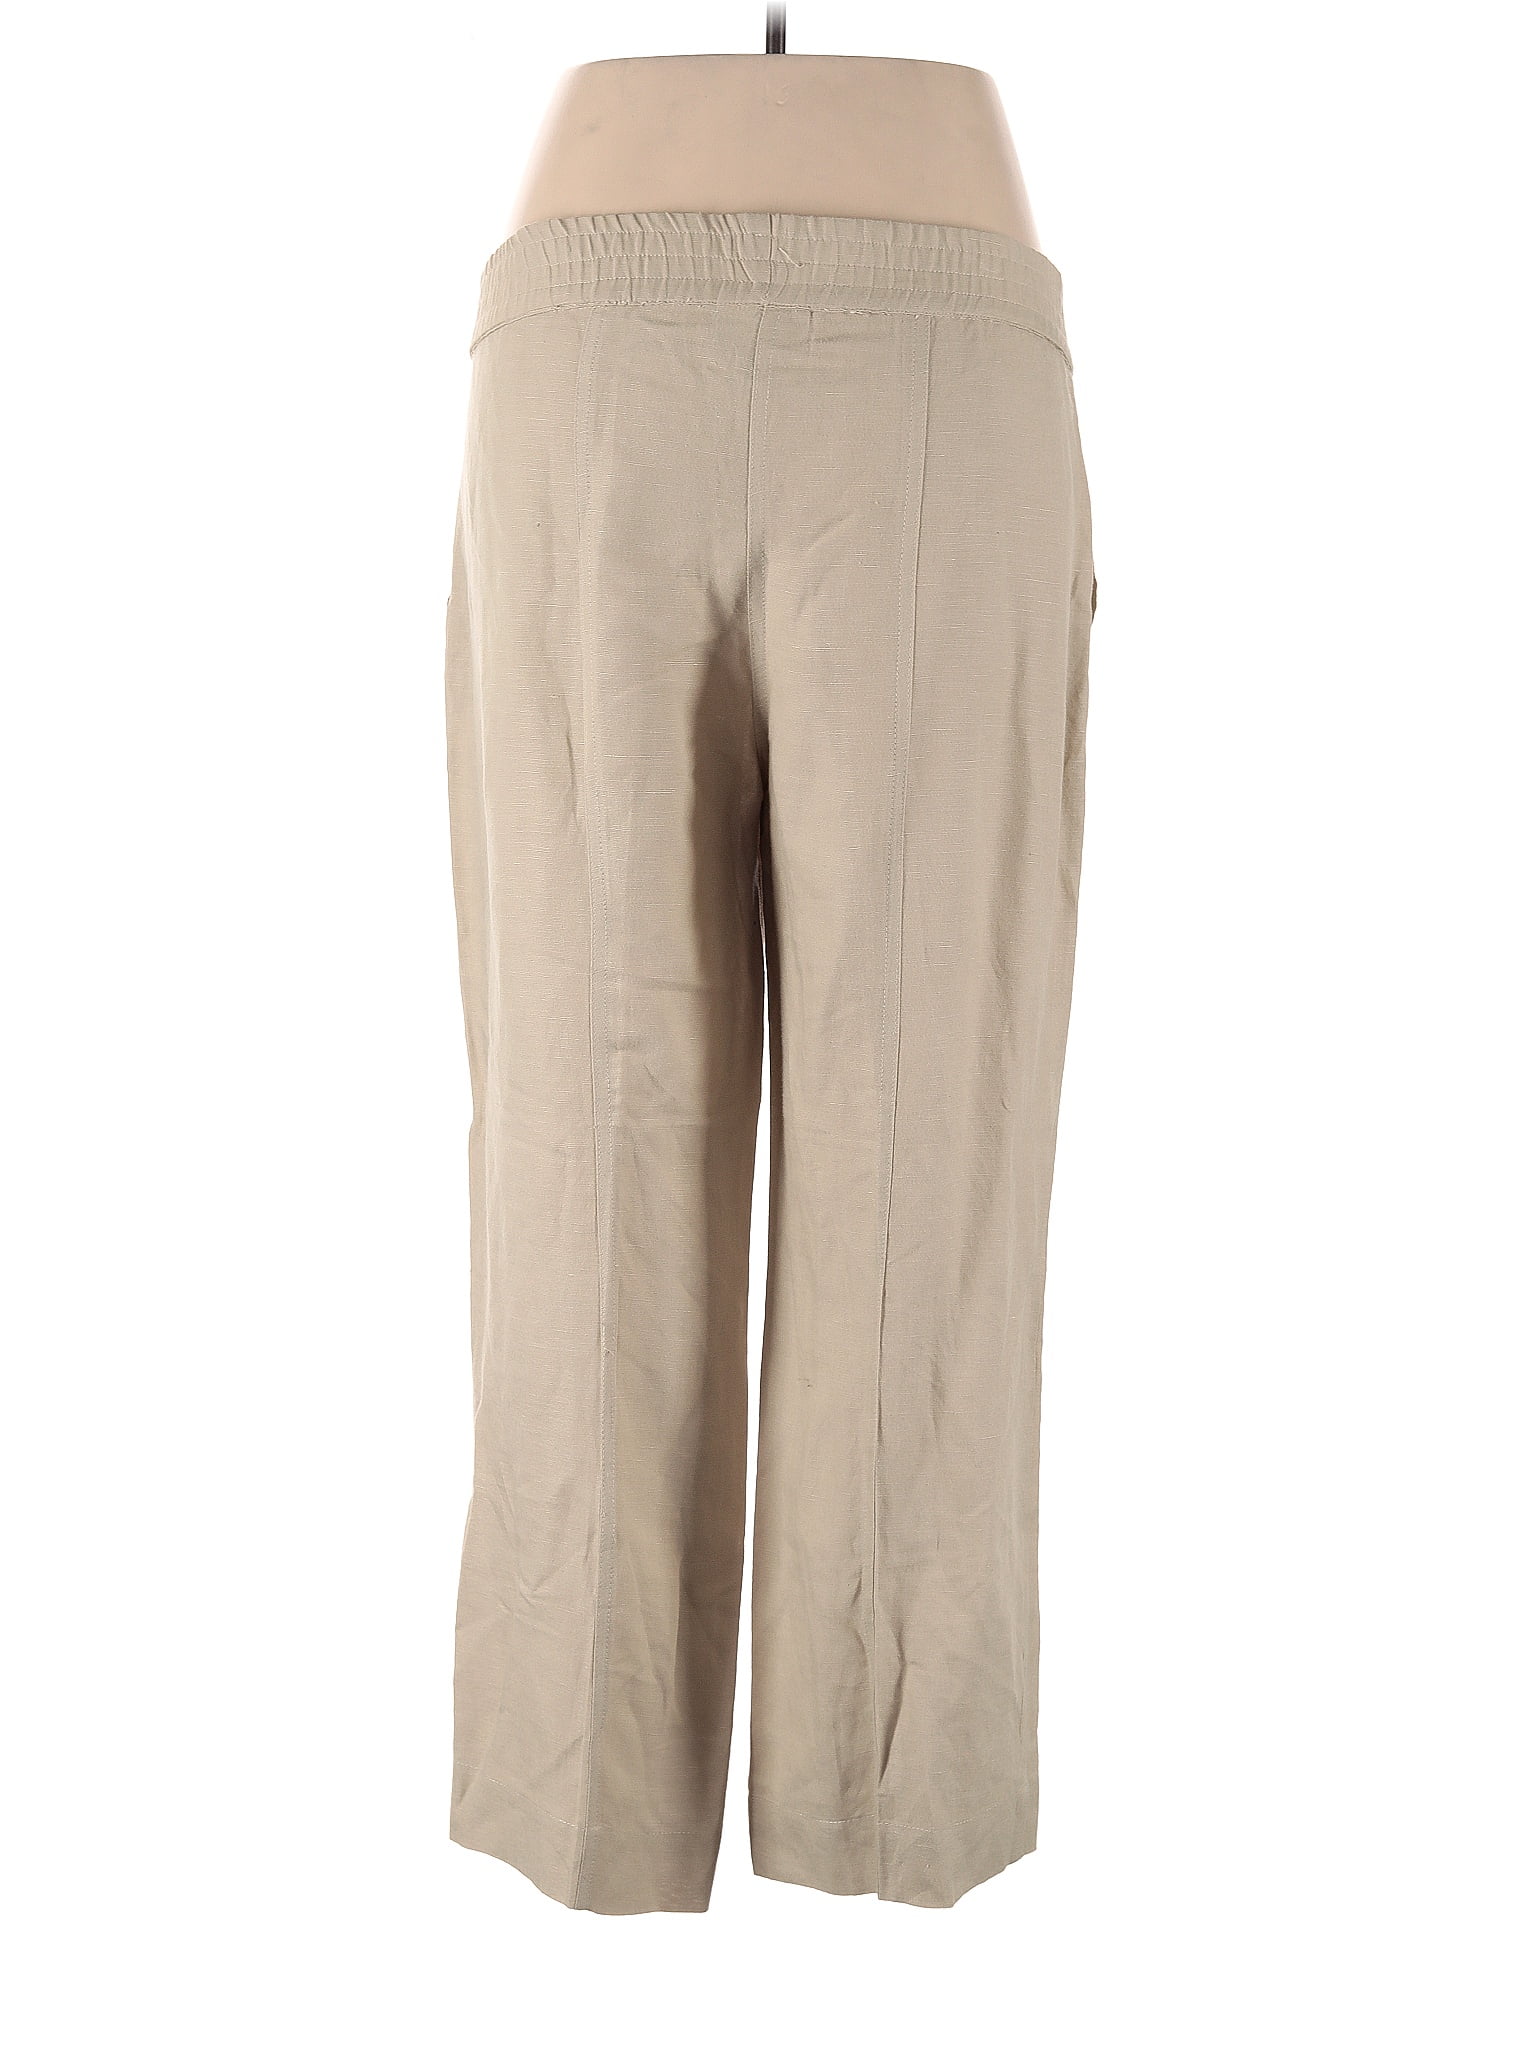 Soft Surroundings Solid Tan Linen Pants Size S (Petite) - 70% off